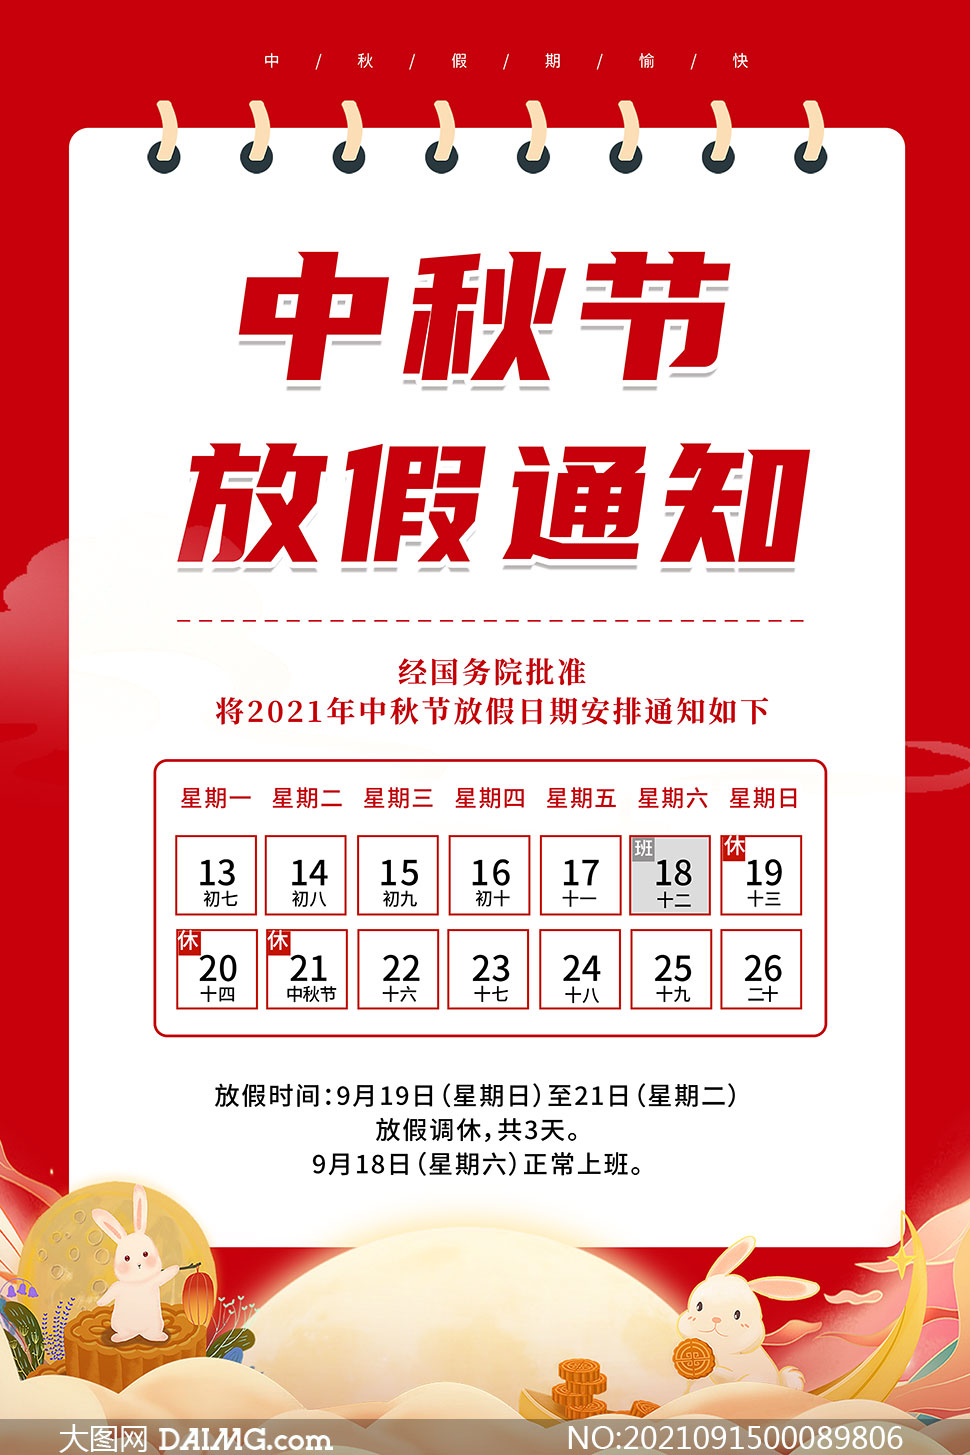 2021年红色中秋节放假通知海报psd素材